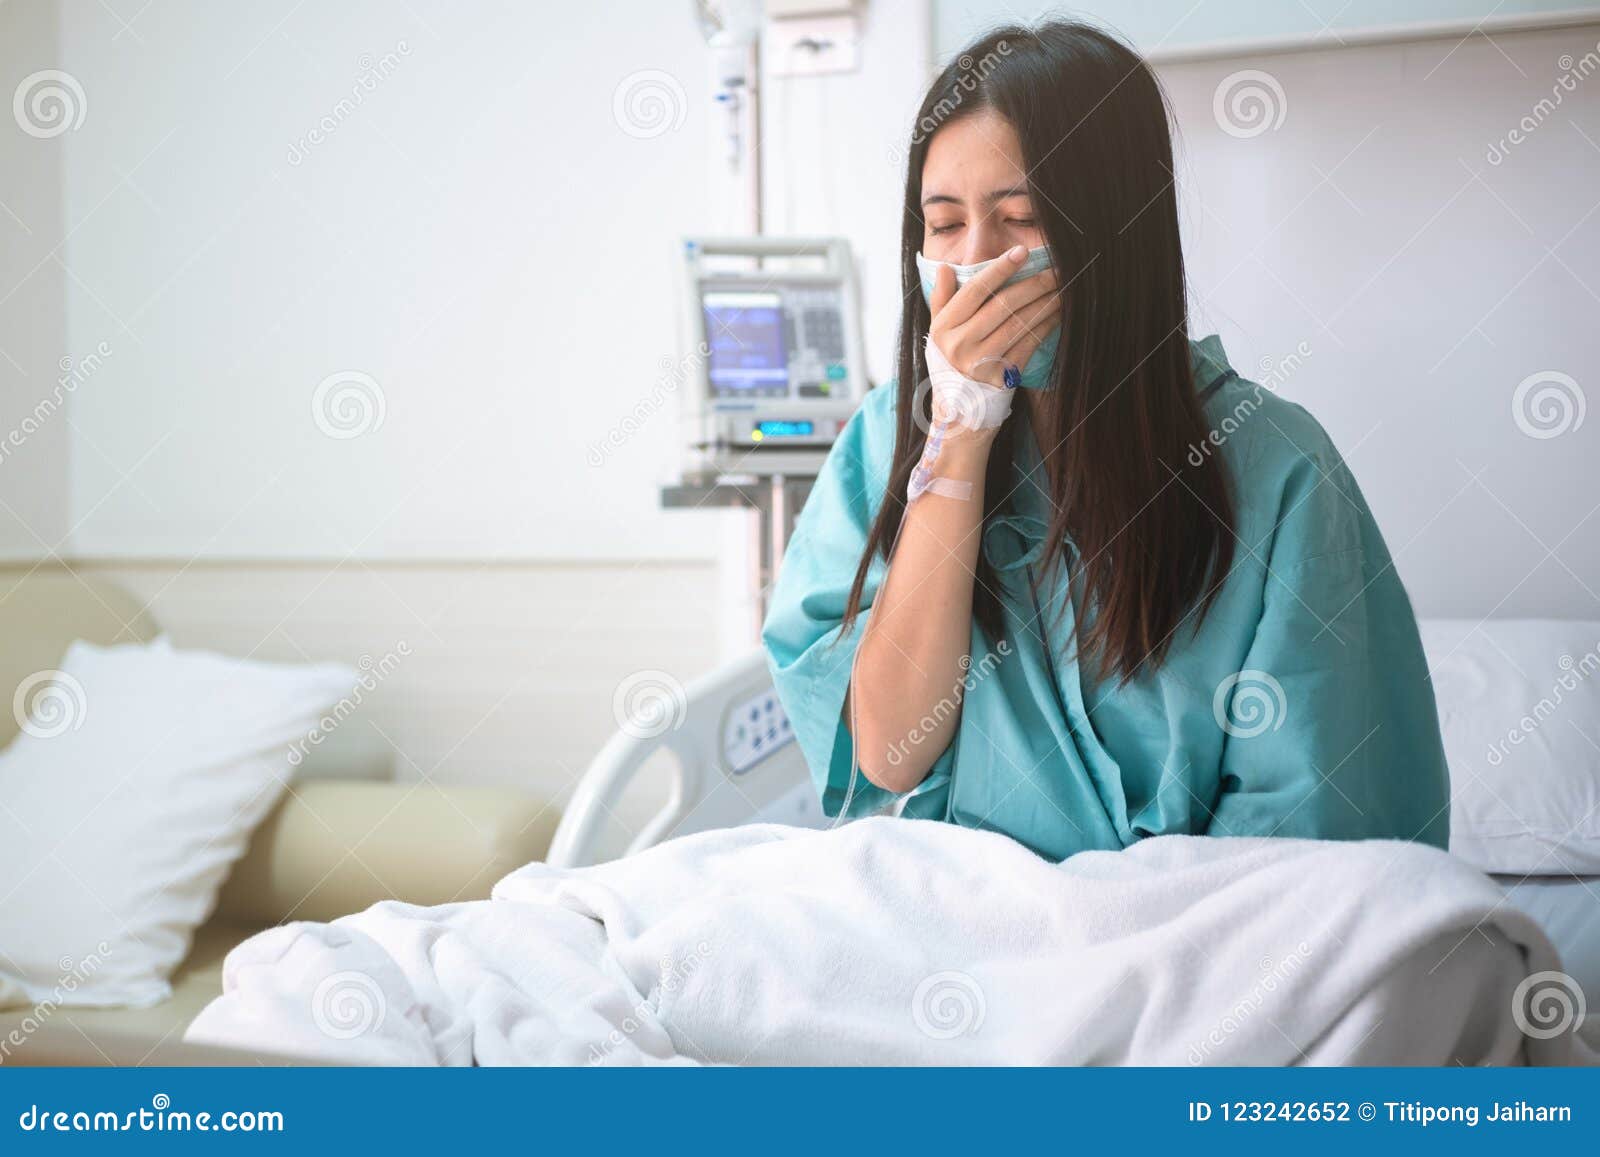 Познакомиться в больнице. Красивая девушка в больнице. Грустная девушка в больнице. Девушка плачет в клинике.